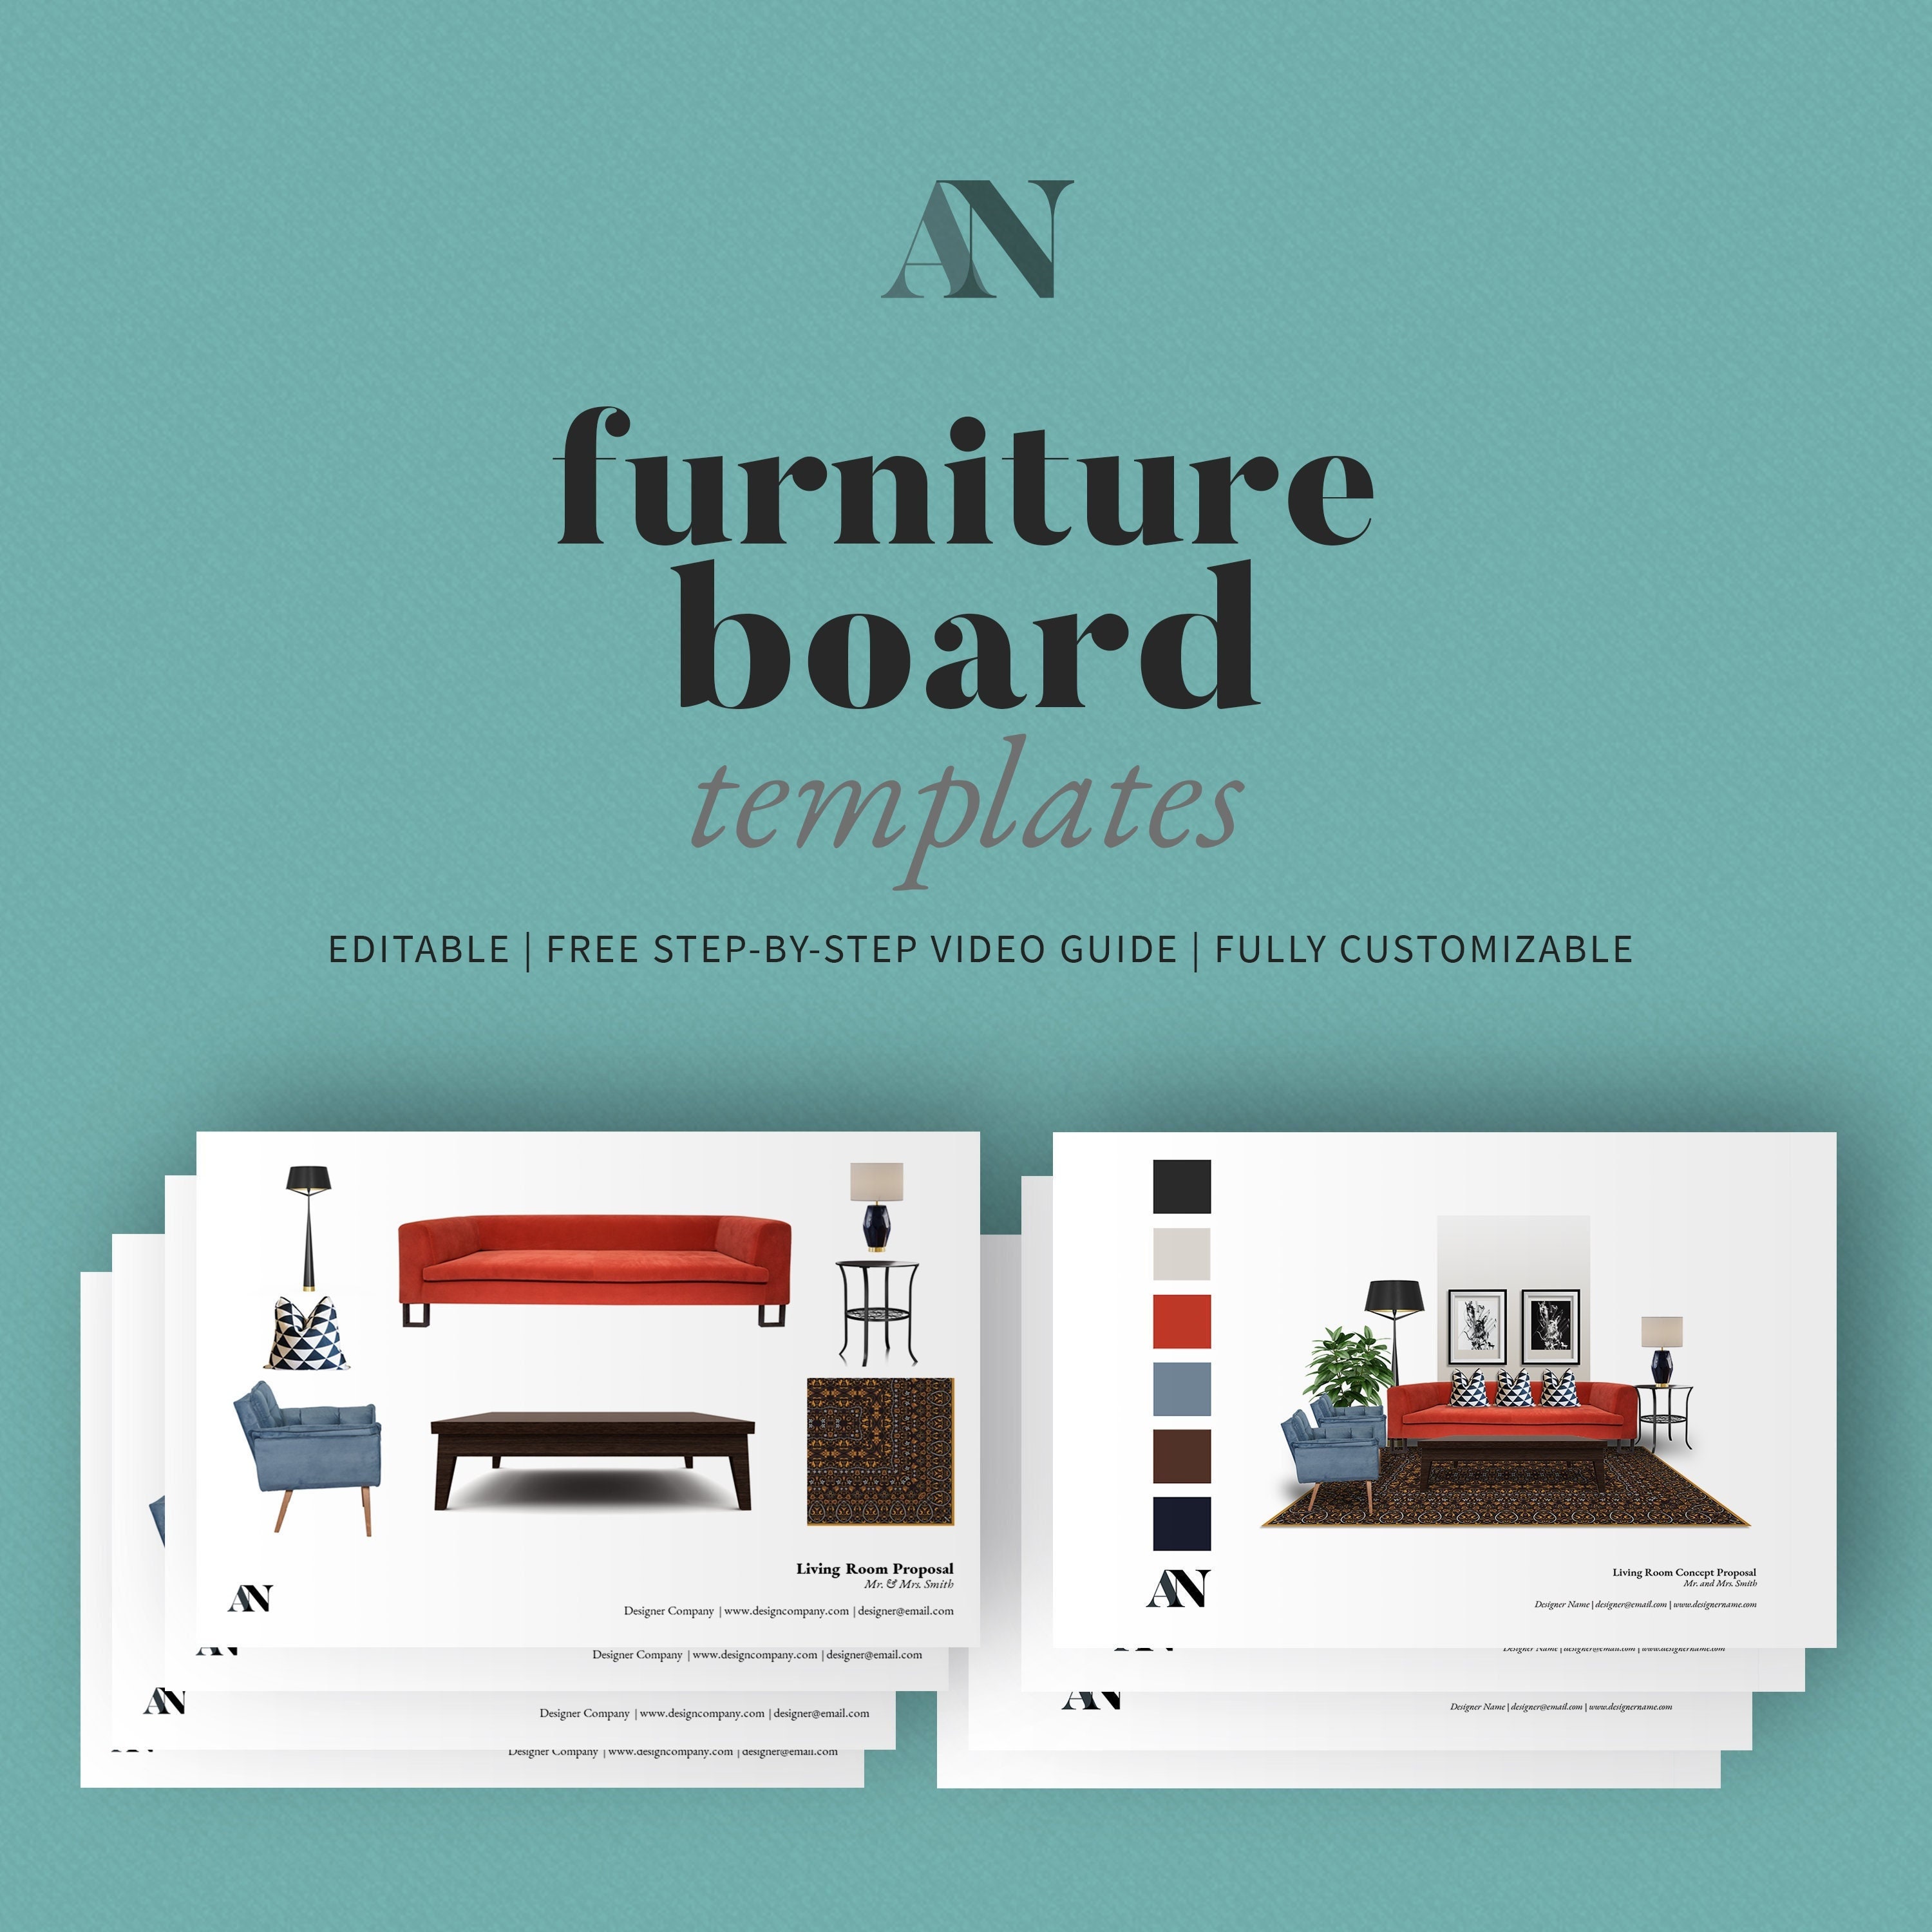 Interior Design Furniture Board Templates pic